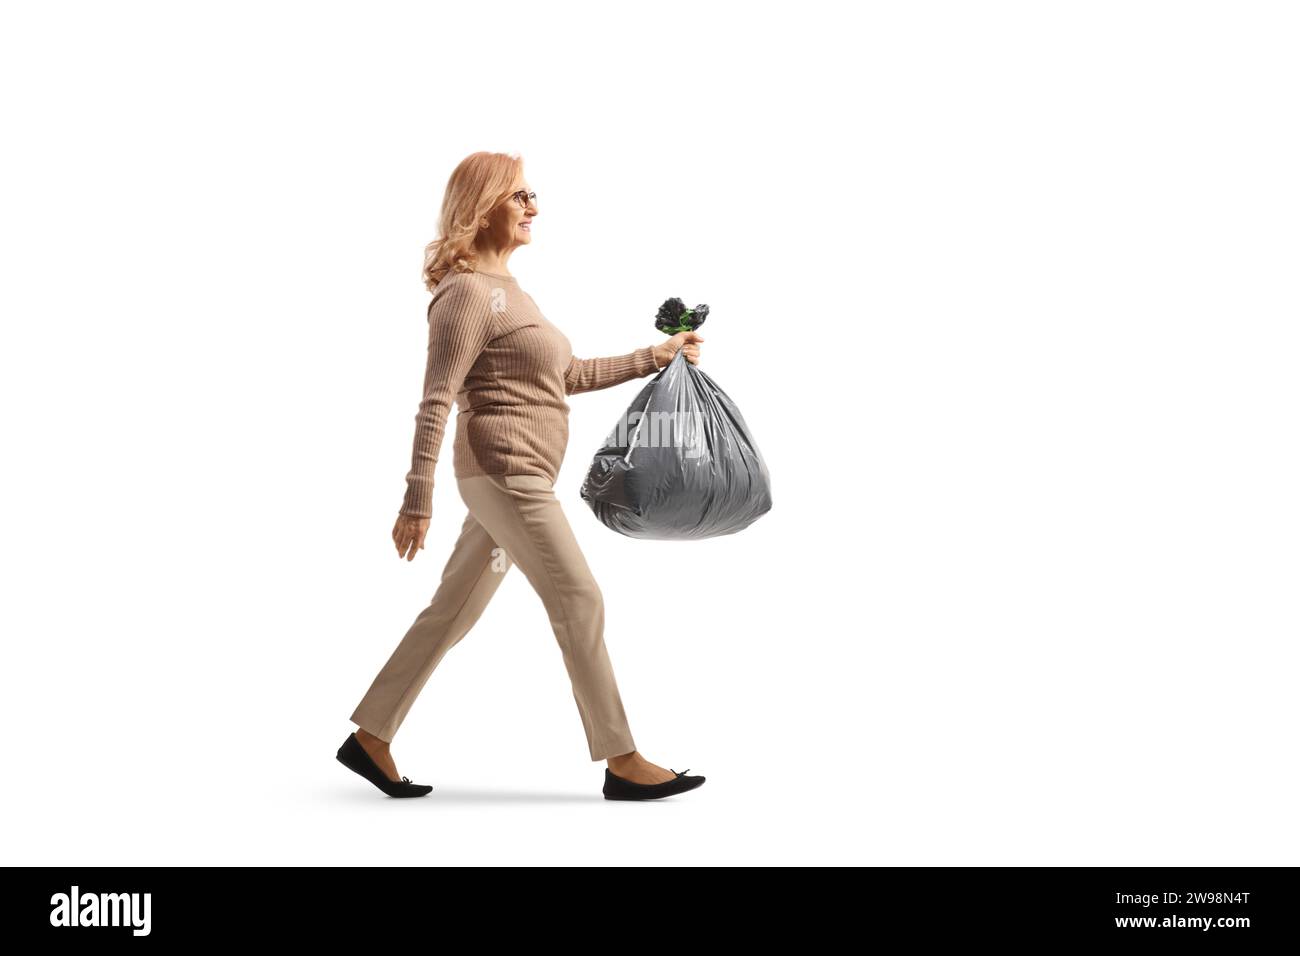 Foto de perfil de longitud completa de una mujer de mediana edad que lleva una bolsa de residuos de plástico aislada sobre fondo blanco Foto de stock